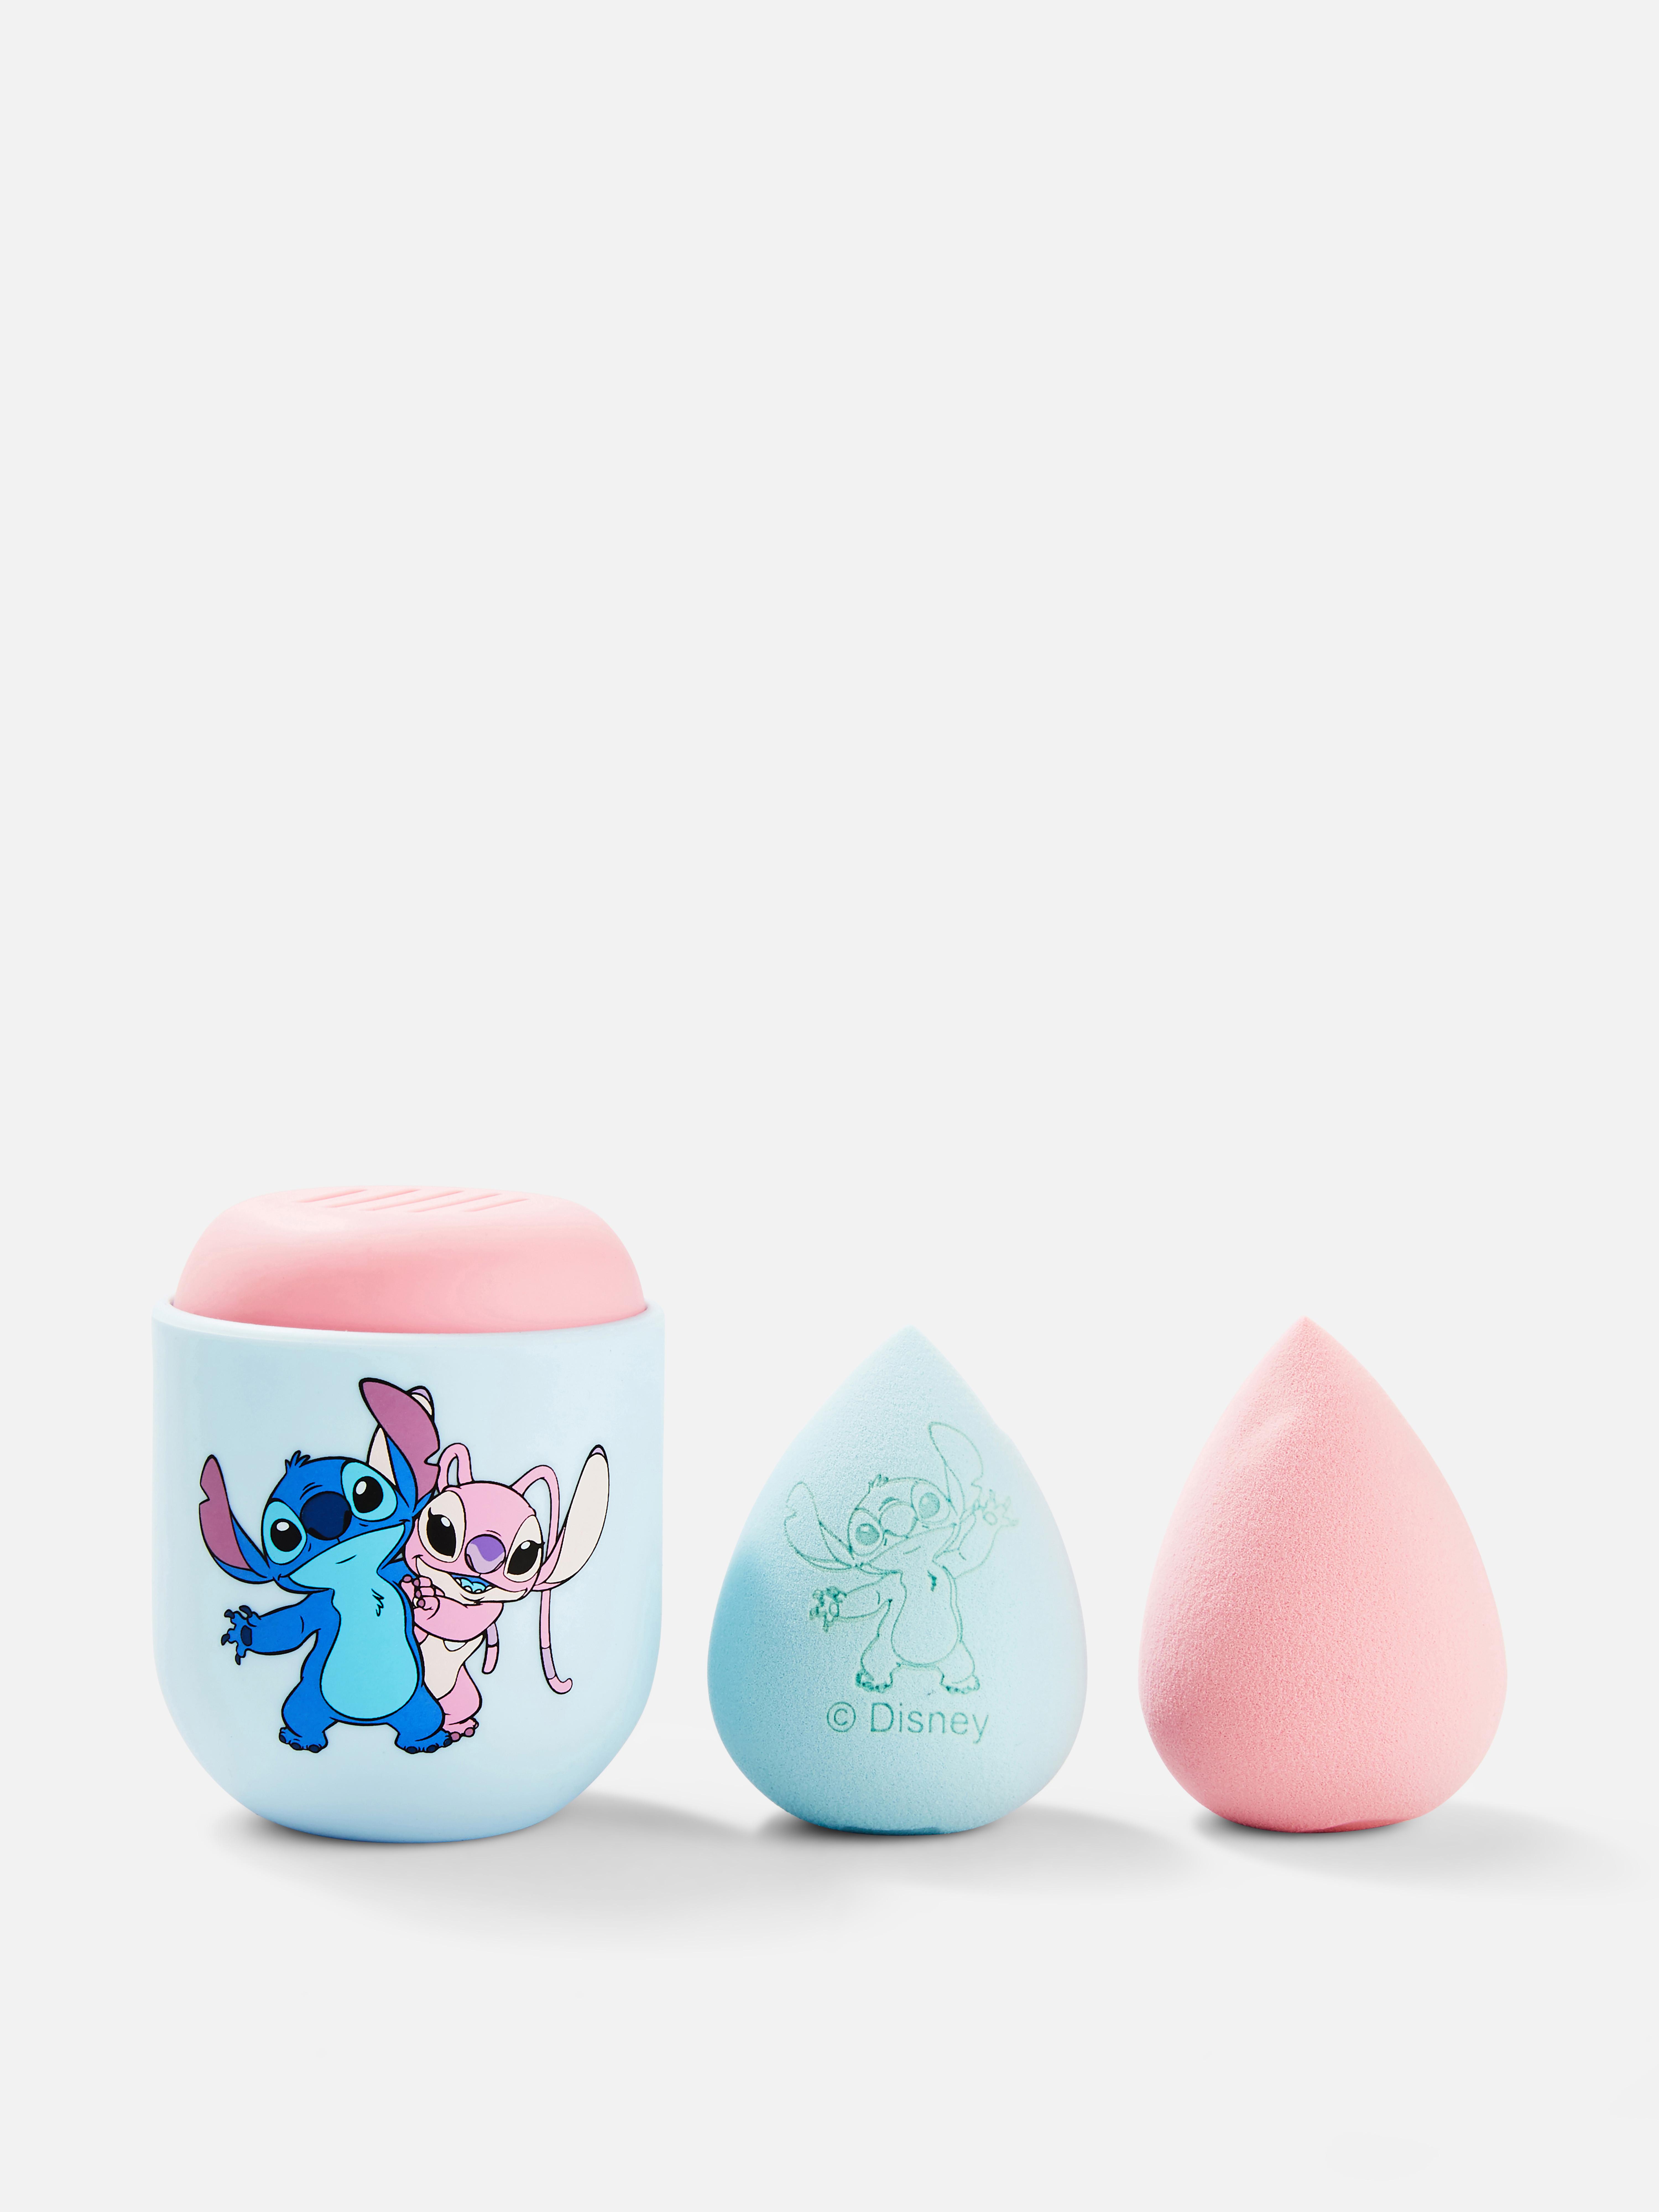 Disney’s Lilo & Stitch Beauty Blenders